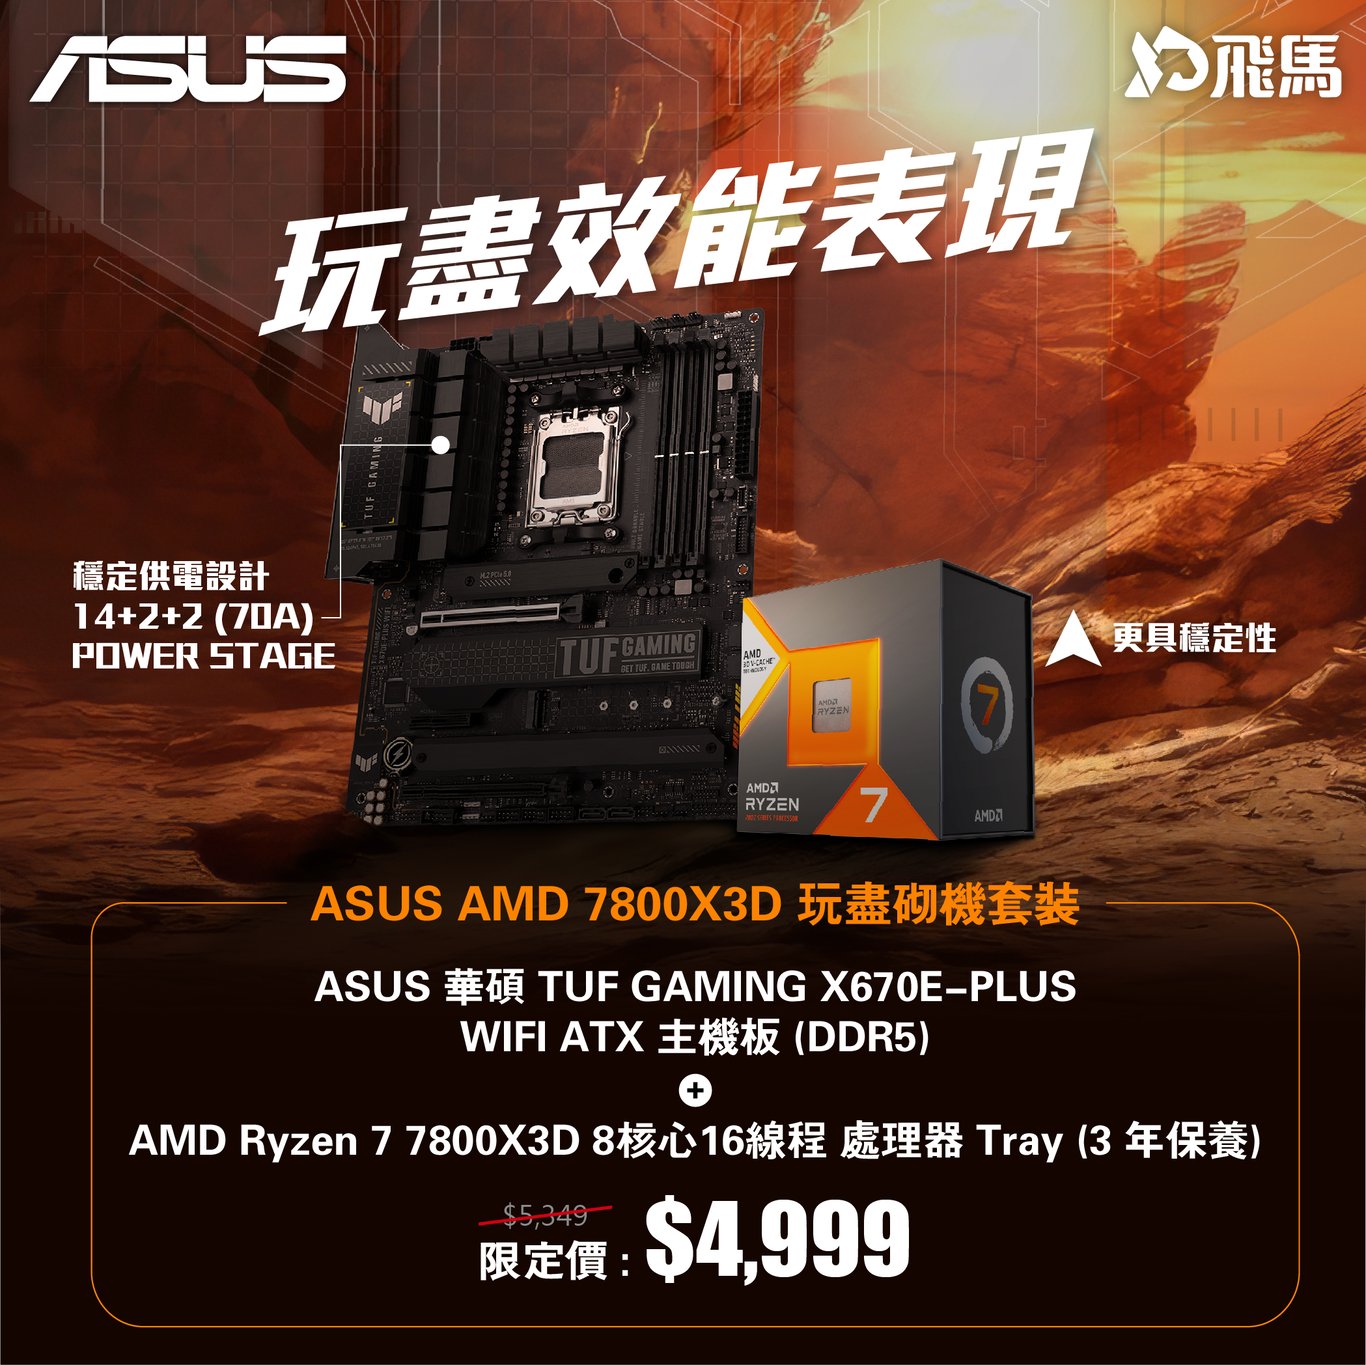 ASUS AMD 7800X3D 